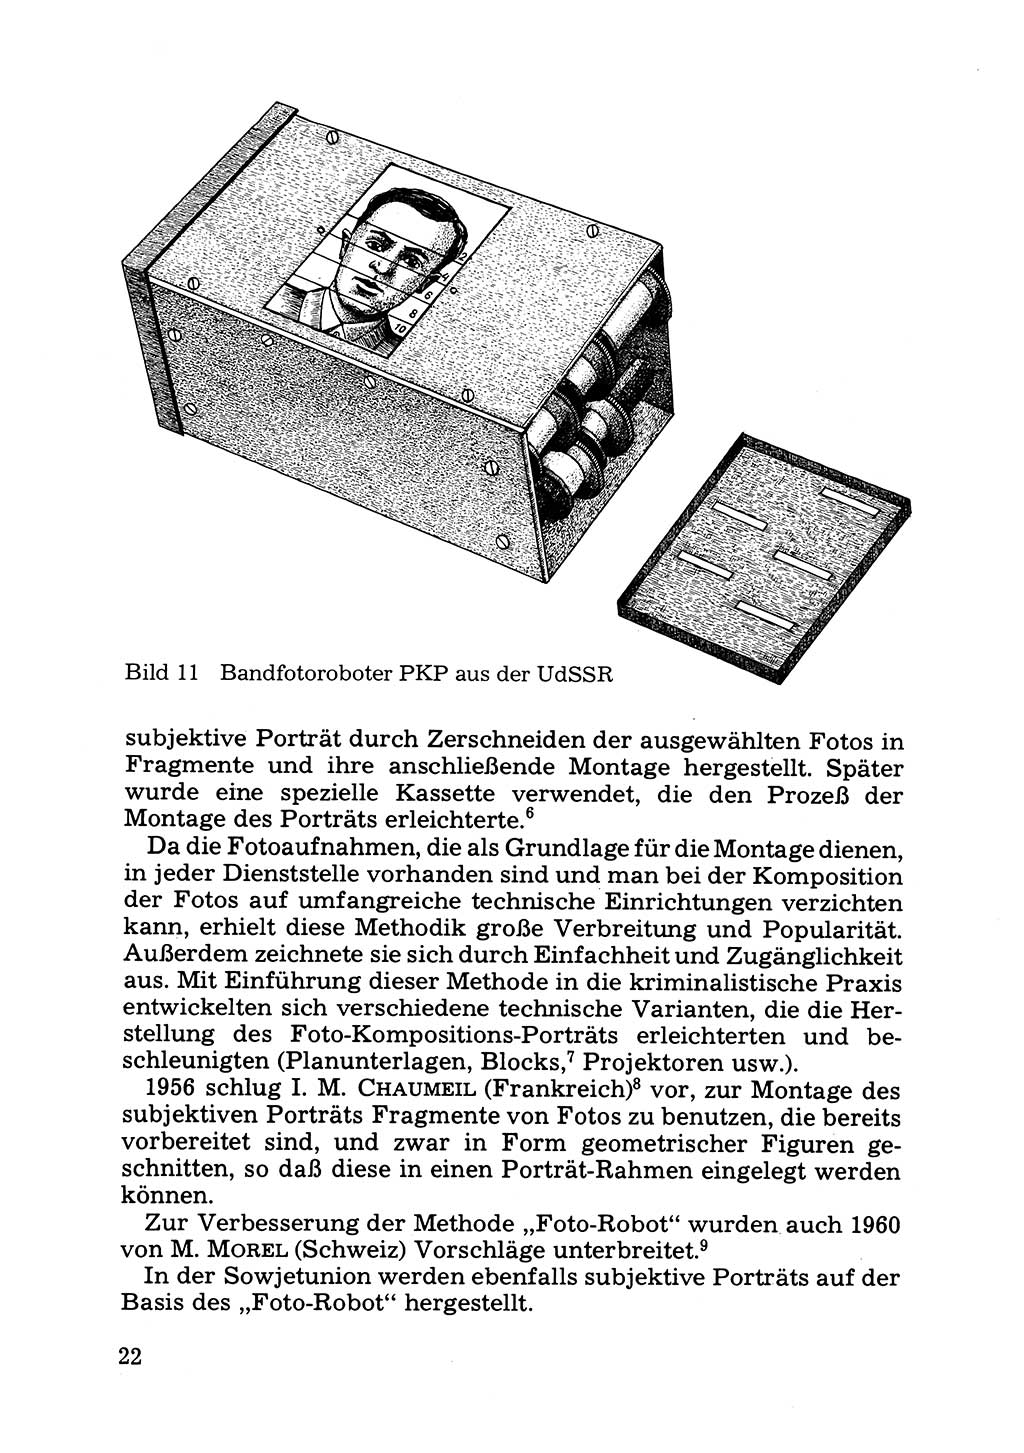 Das subjektive Porträt [Deutsche Demokratische Republik (DDR)] 1981, Seite 22 (Subj. Port. DDR 1981, S. 22)